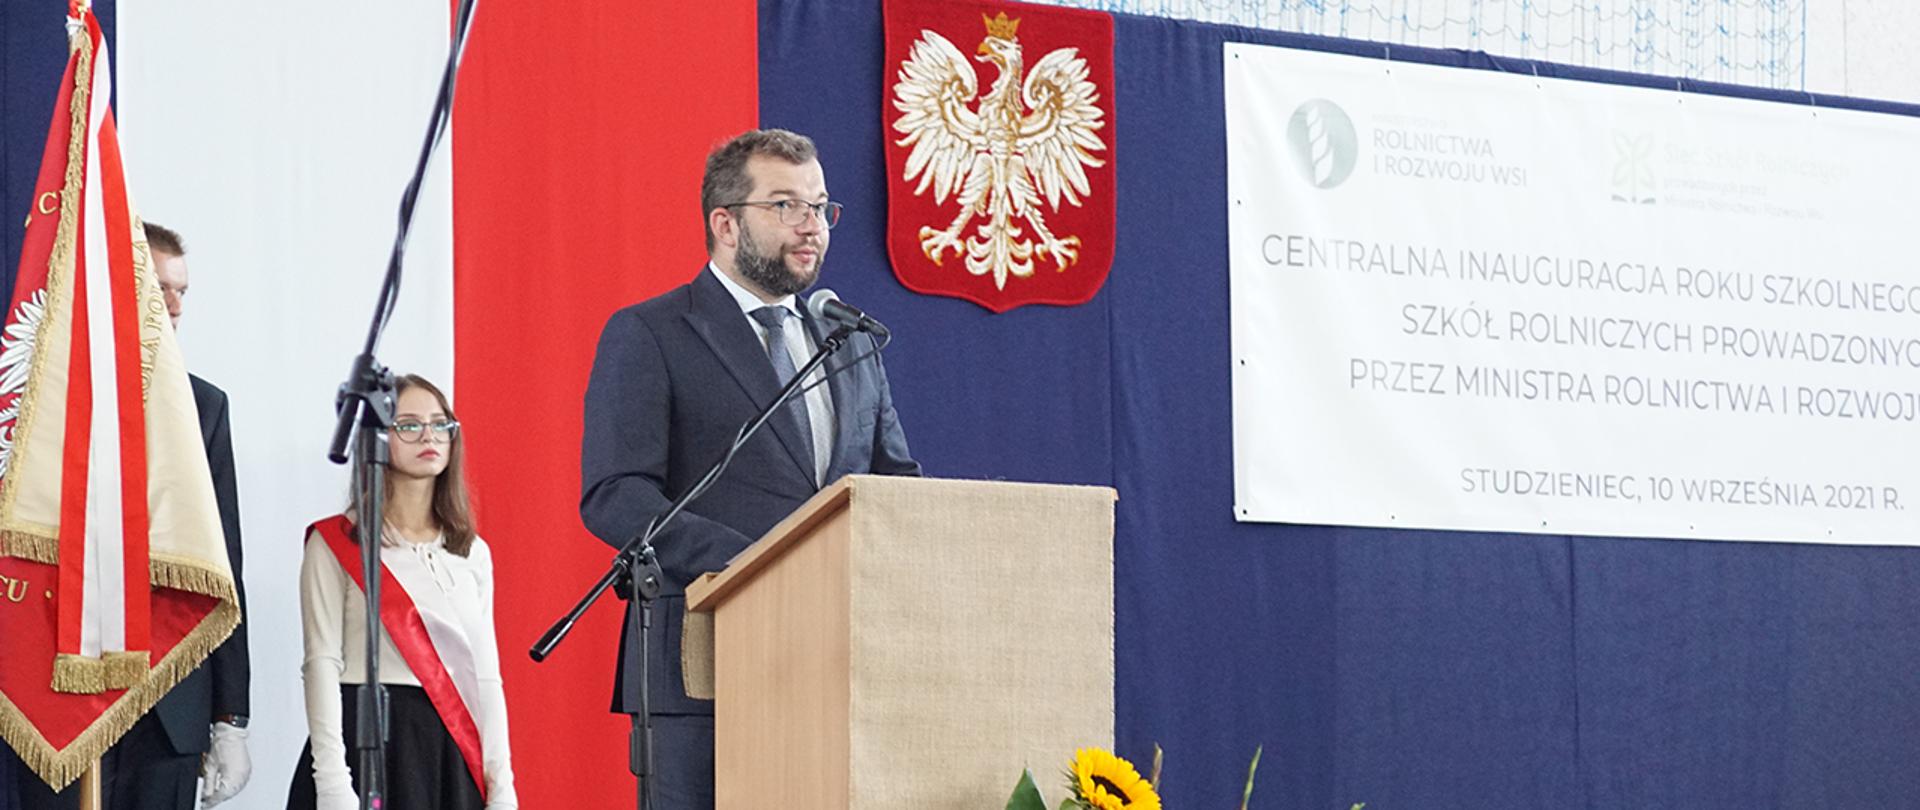 Minister Grzegorz Puda stojący przy mównicy podczas rozpoczęcia roku szkolnego, obok poczet sztandarowy ze sztandarem szkoły.